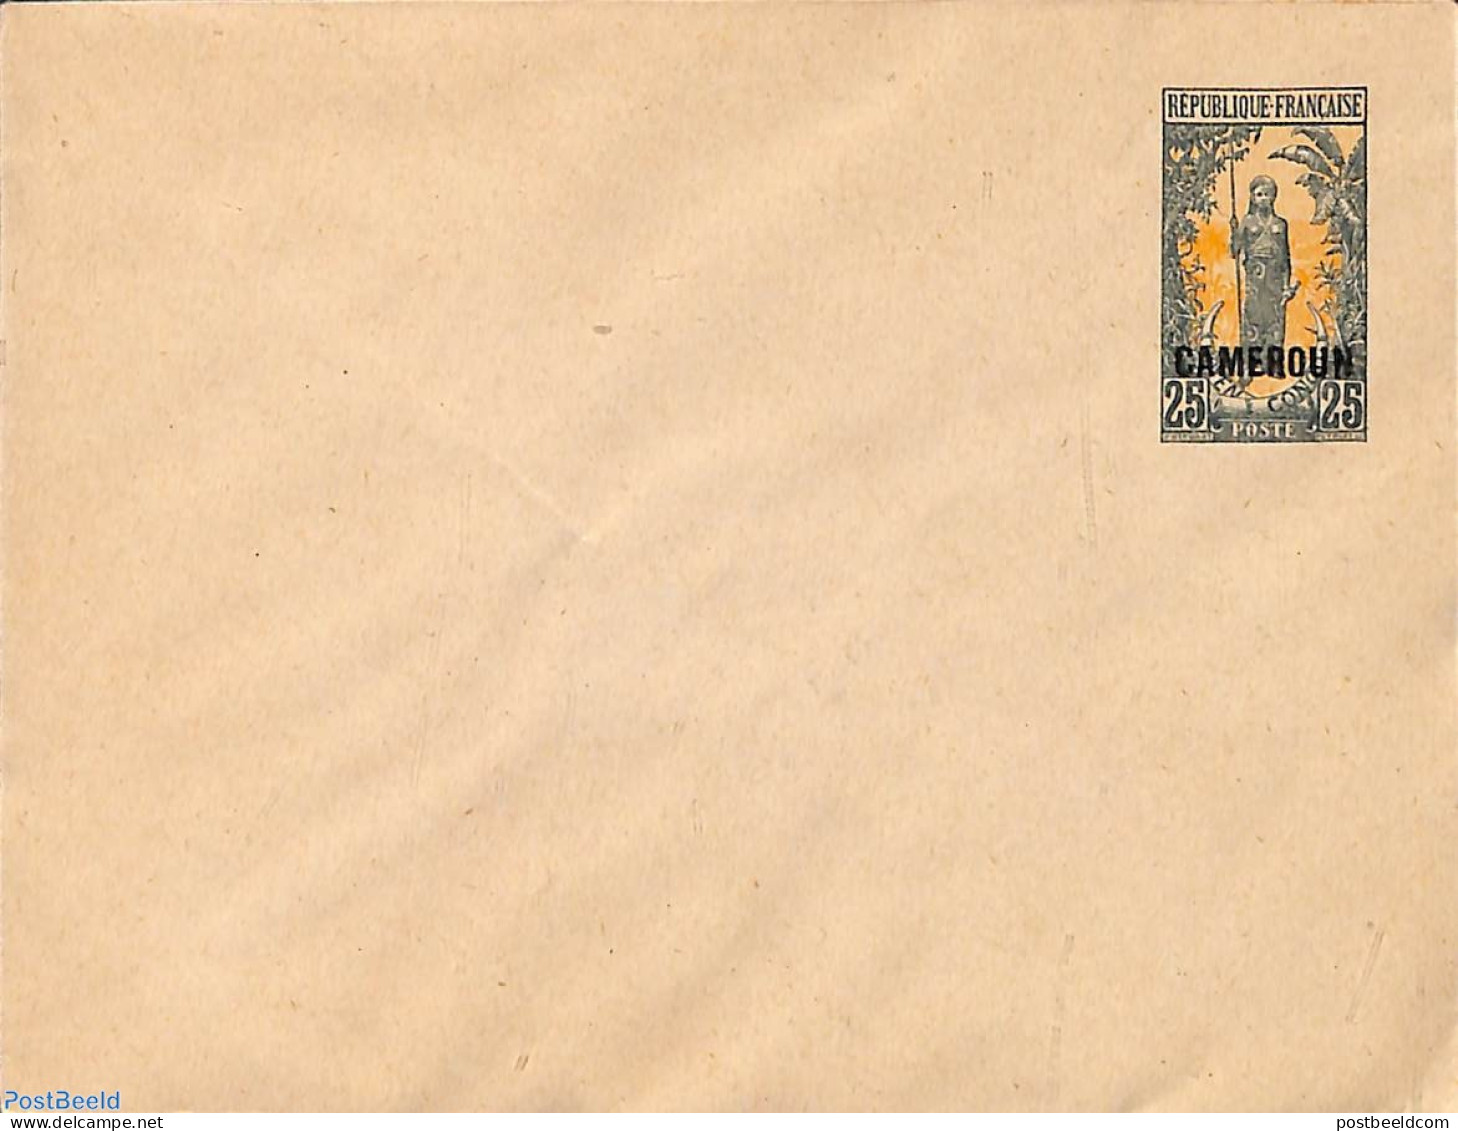 Cameroon 1920 Envelope 25c, Unused Postal Stationary - Cameroon (1960-...)